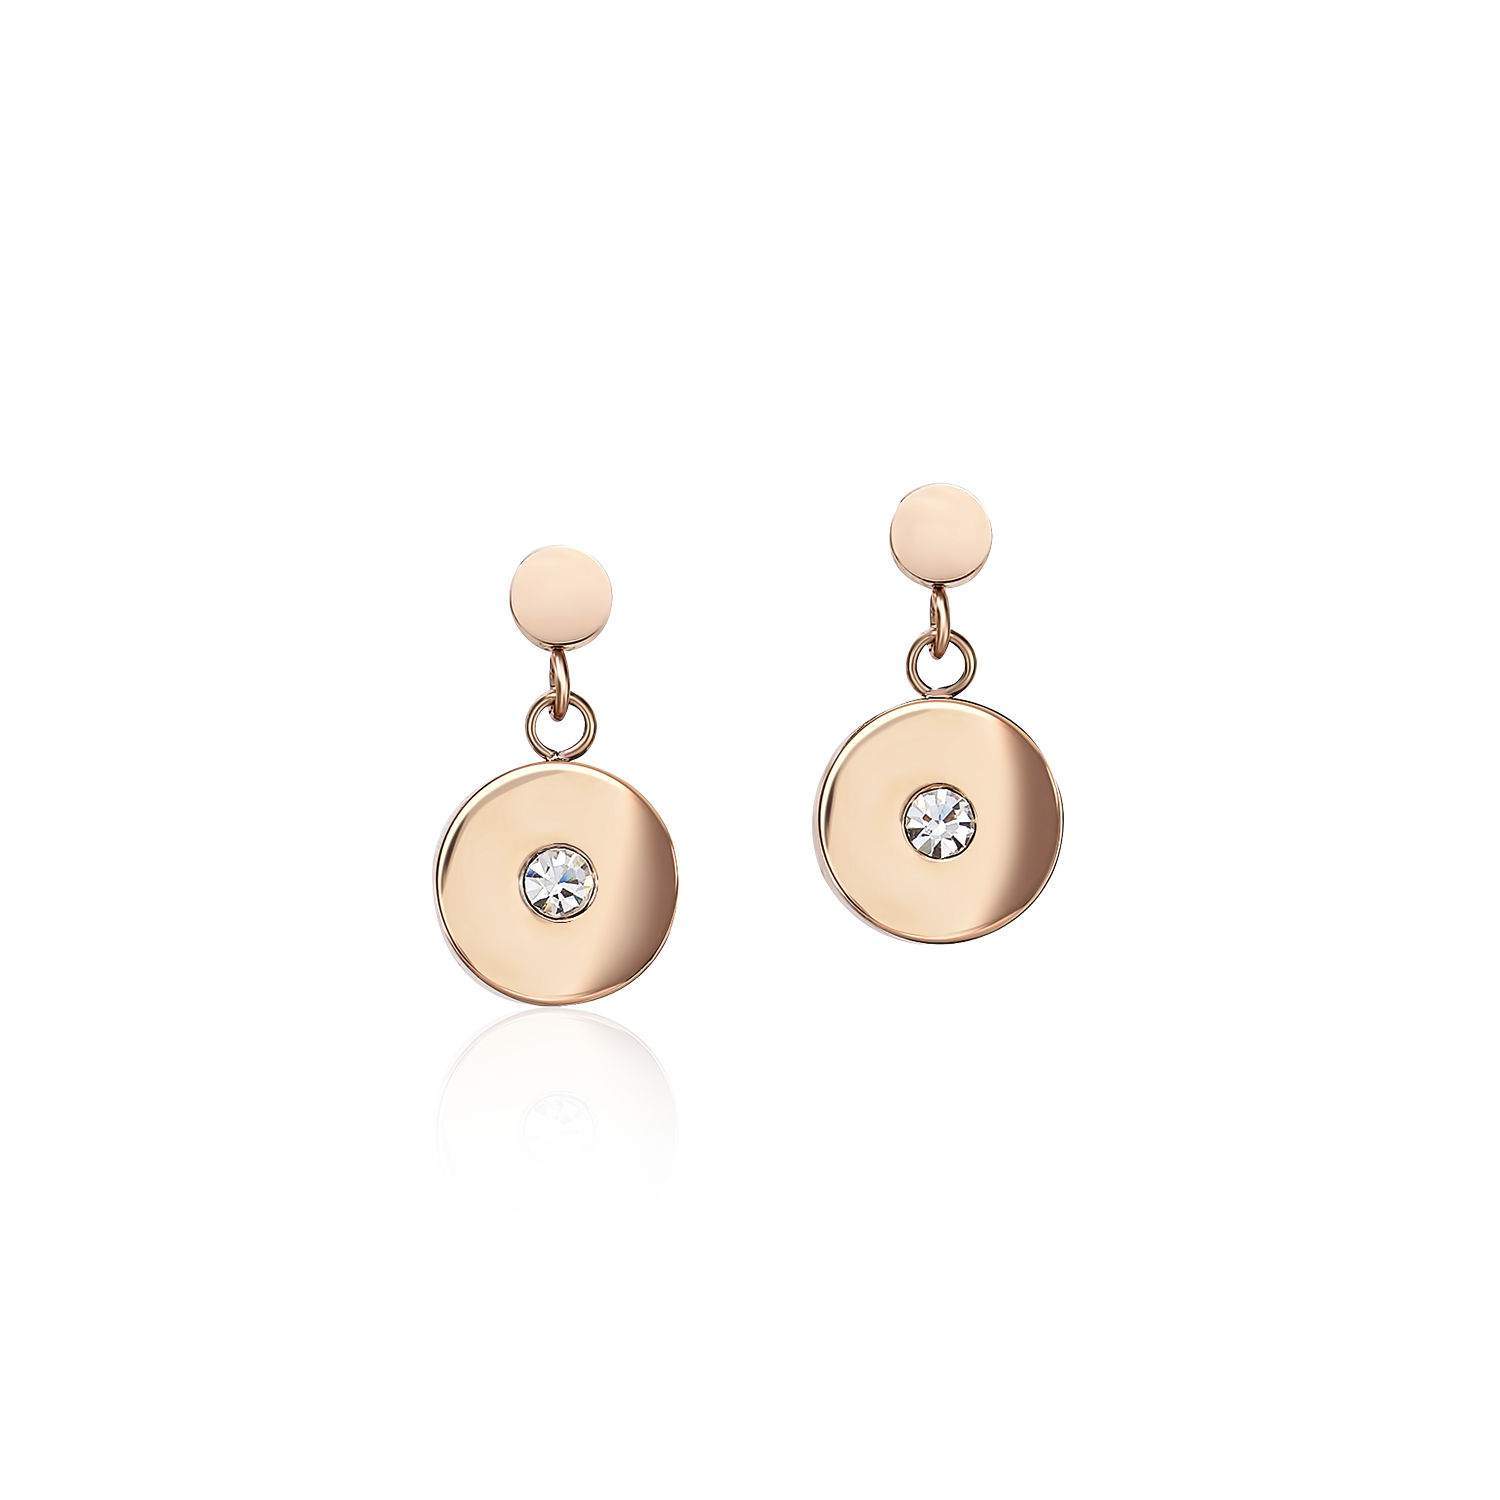 Boucles d'oreille Coins Acier or rose, verre taillé & Cristaux  blanc